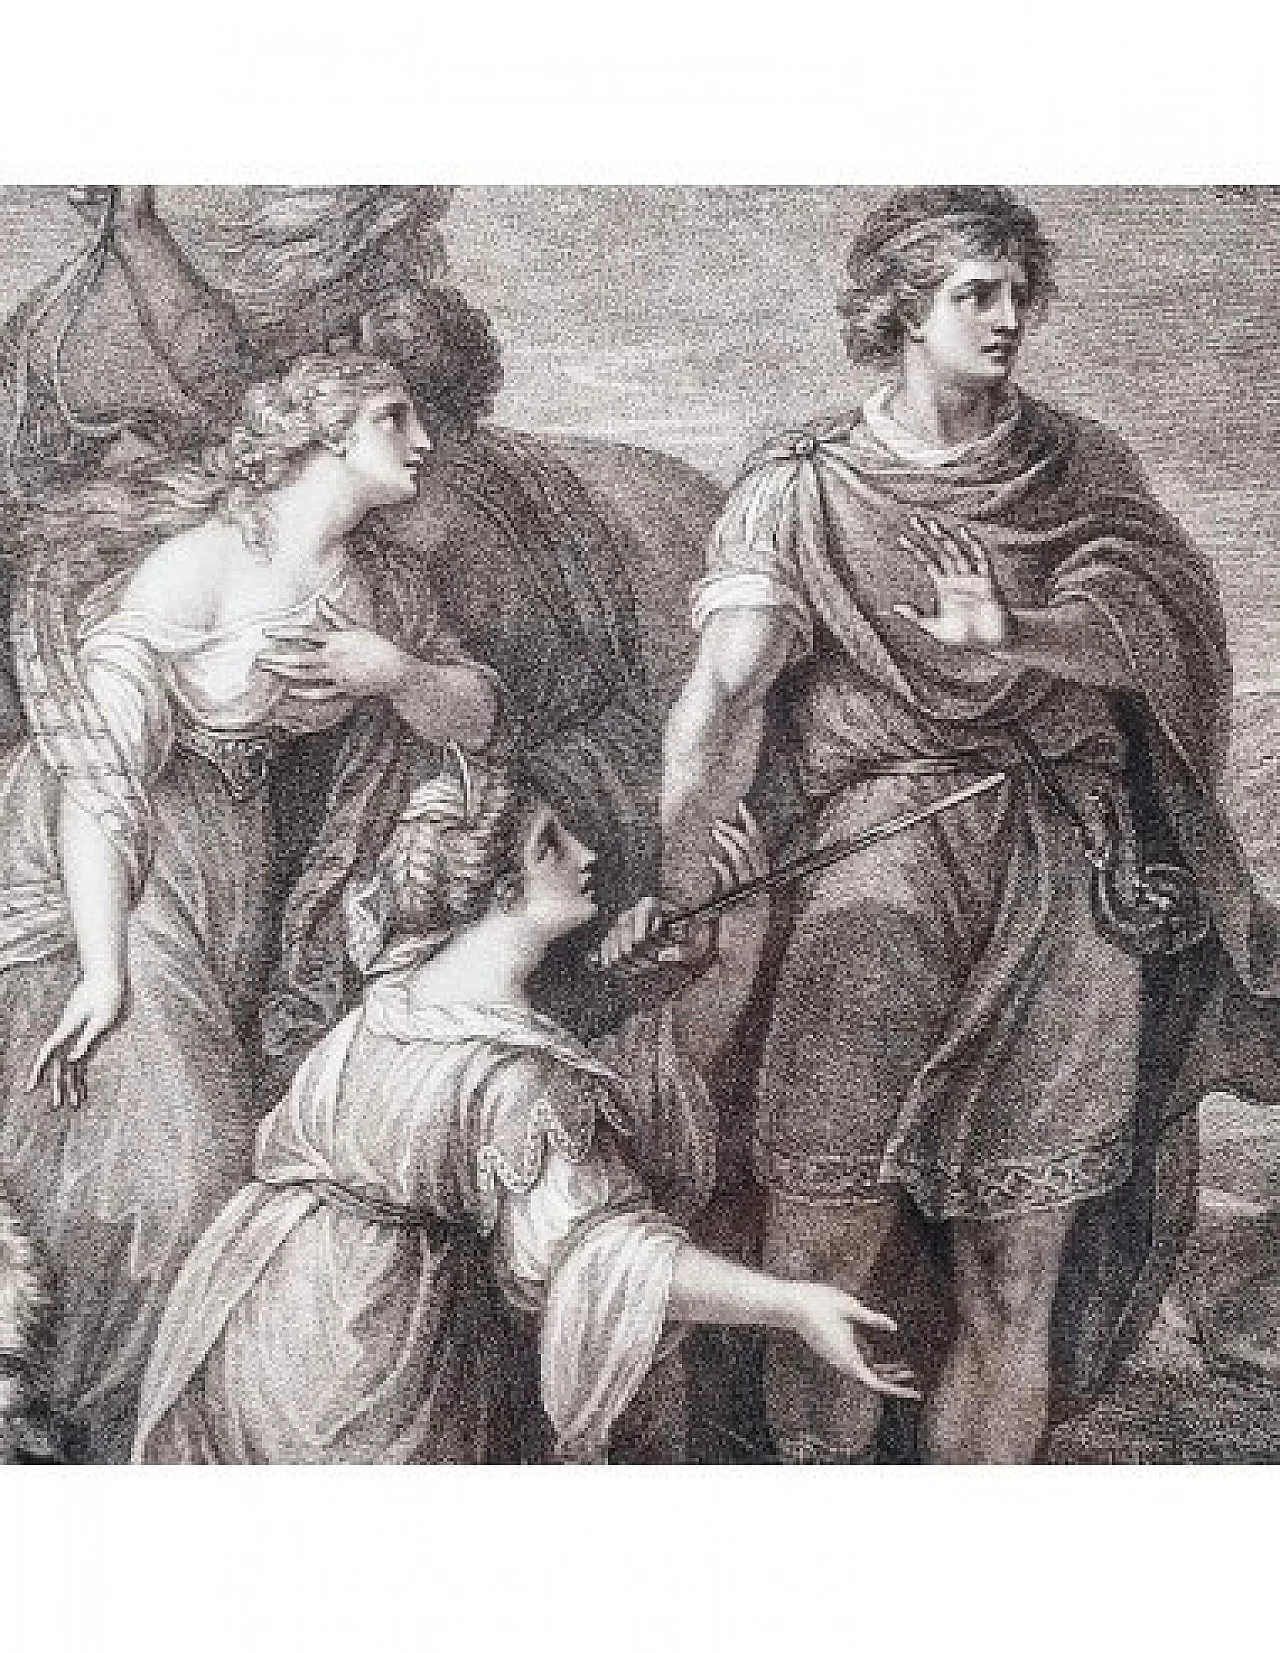 Palamone e Arcite, incisione di Francesco Bartolozzi, '700 5